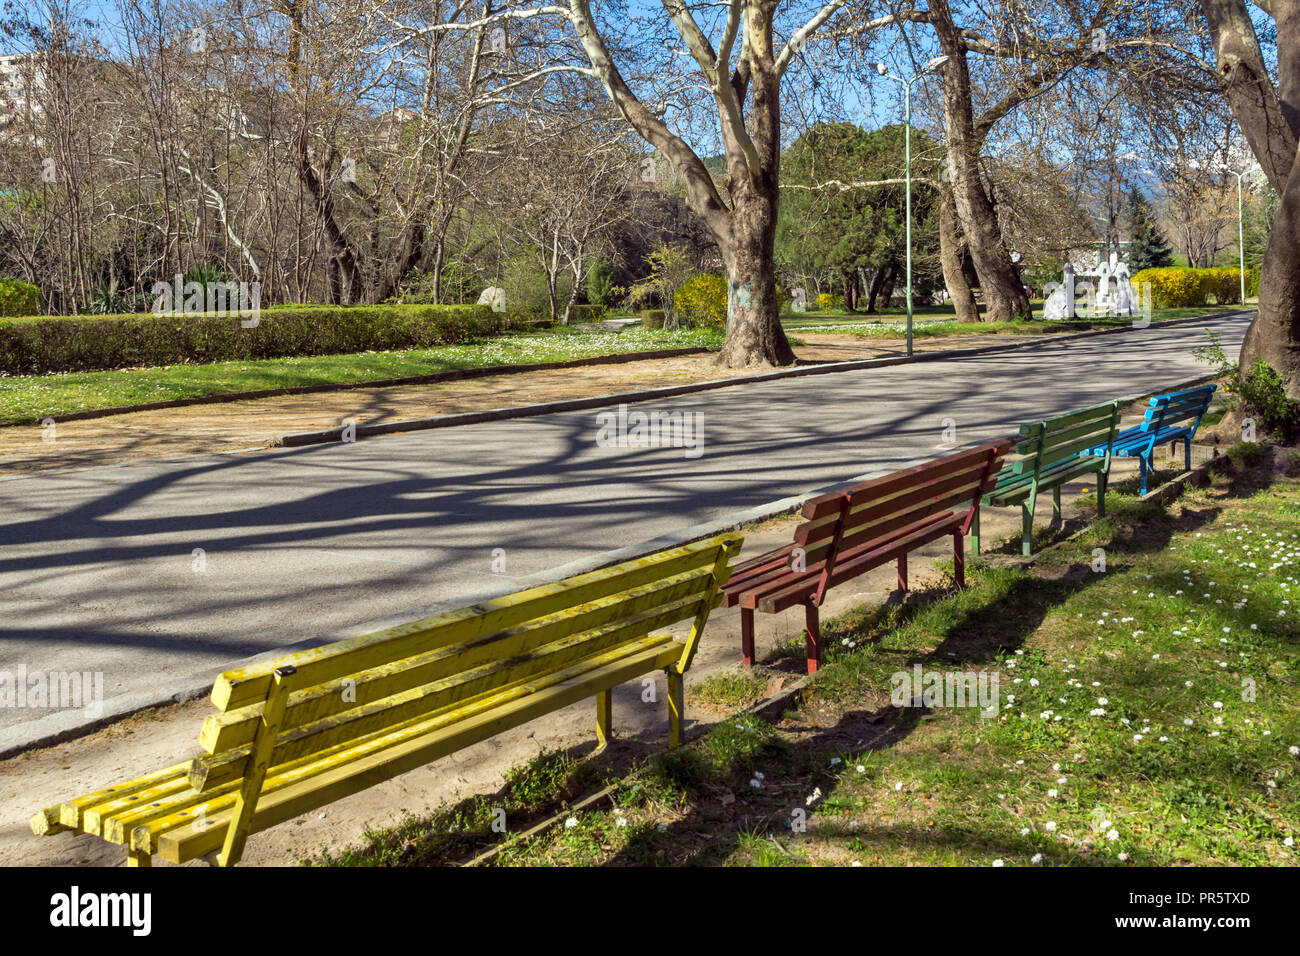 SANDANSKI, BULGARIA - APRIL 4, 2018: Spring view of Park St. Vrach in town of Sandanski, Bulgaria Stock Photo